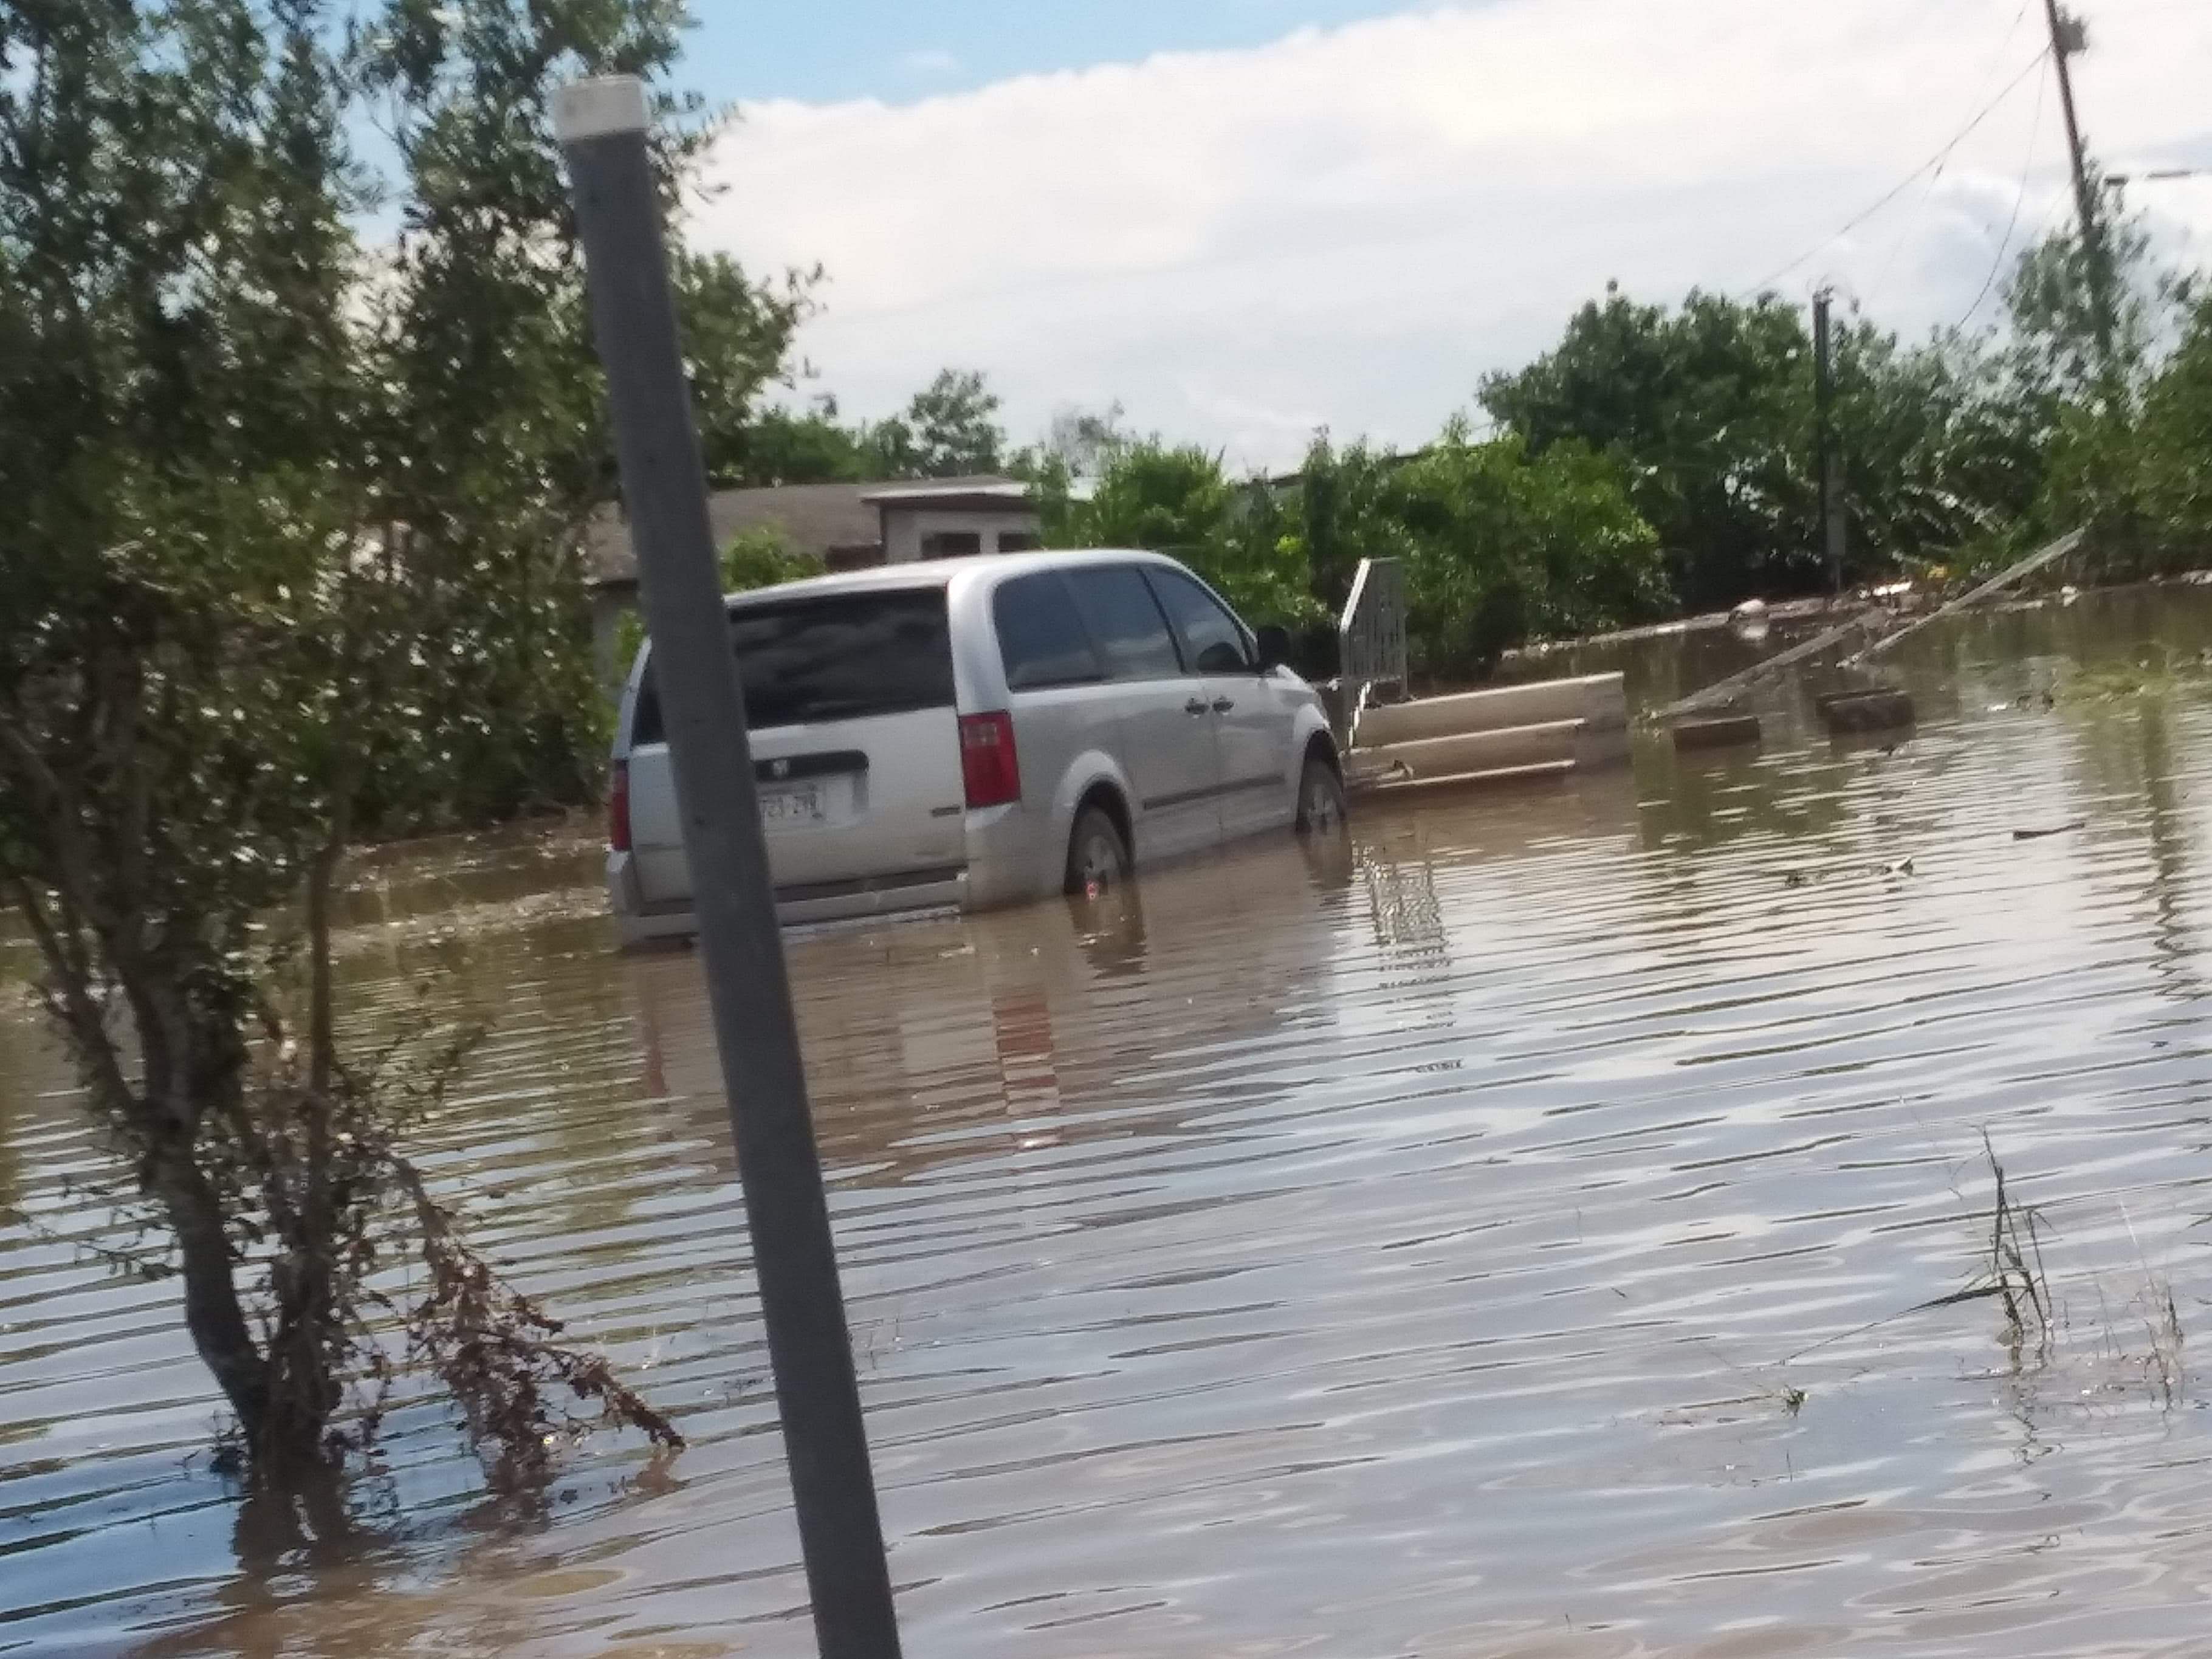 2019 RGV Flood Help